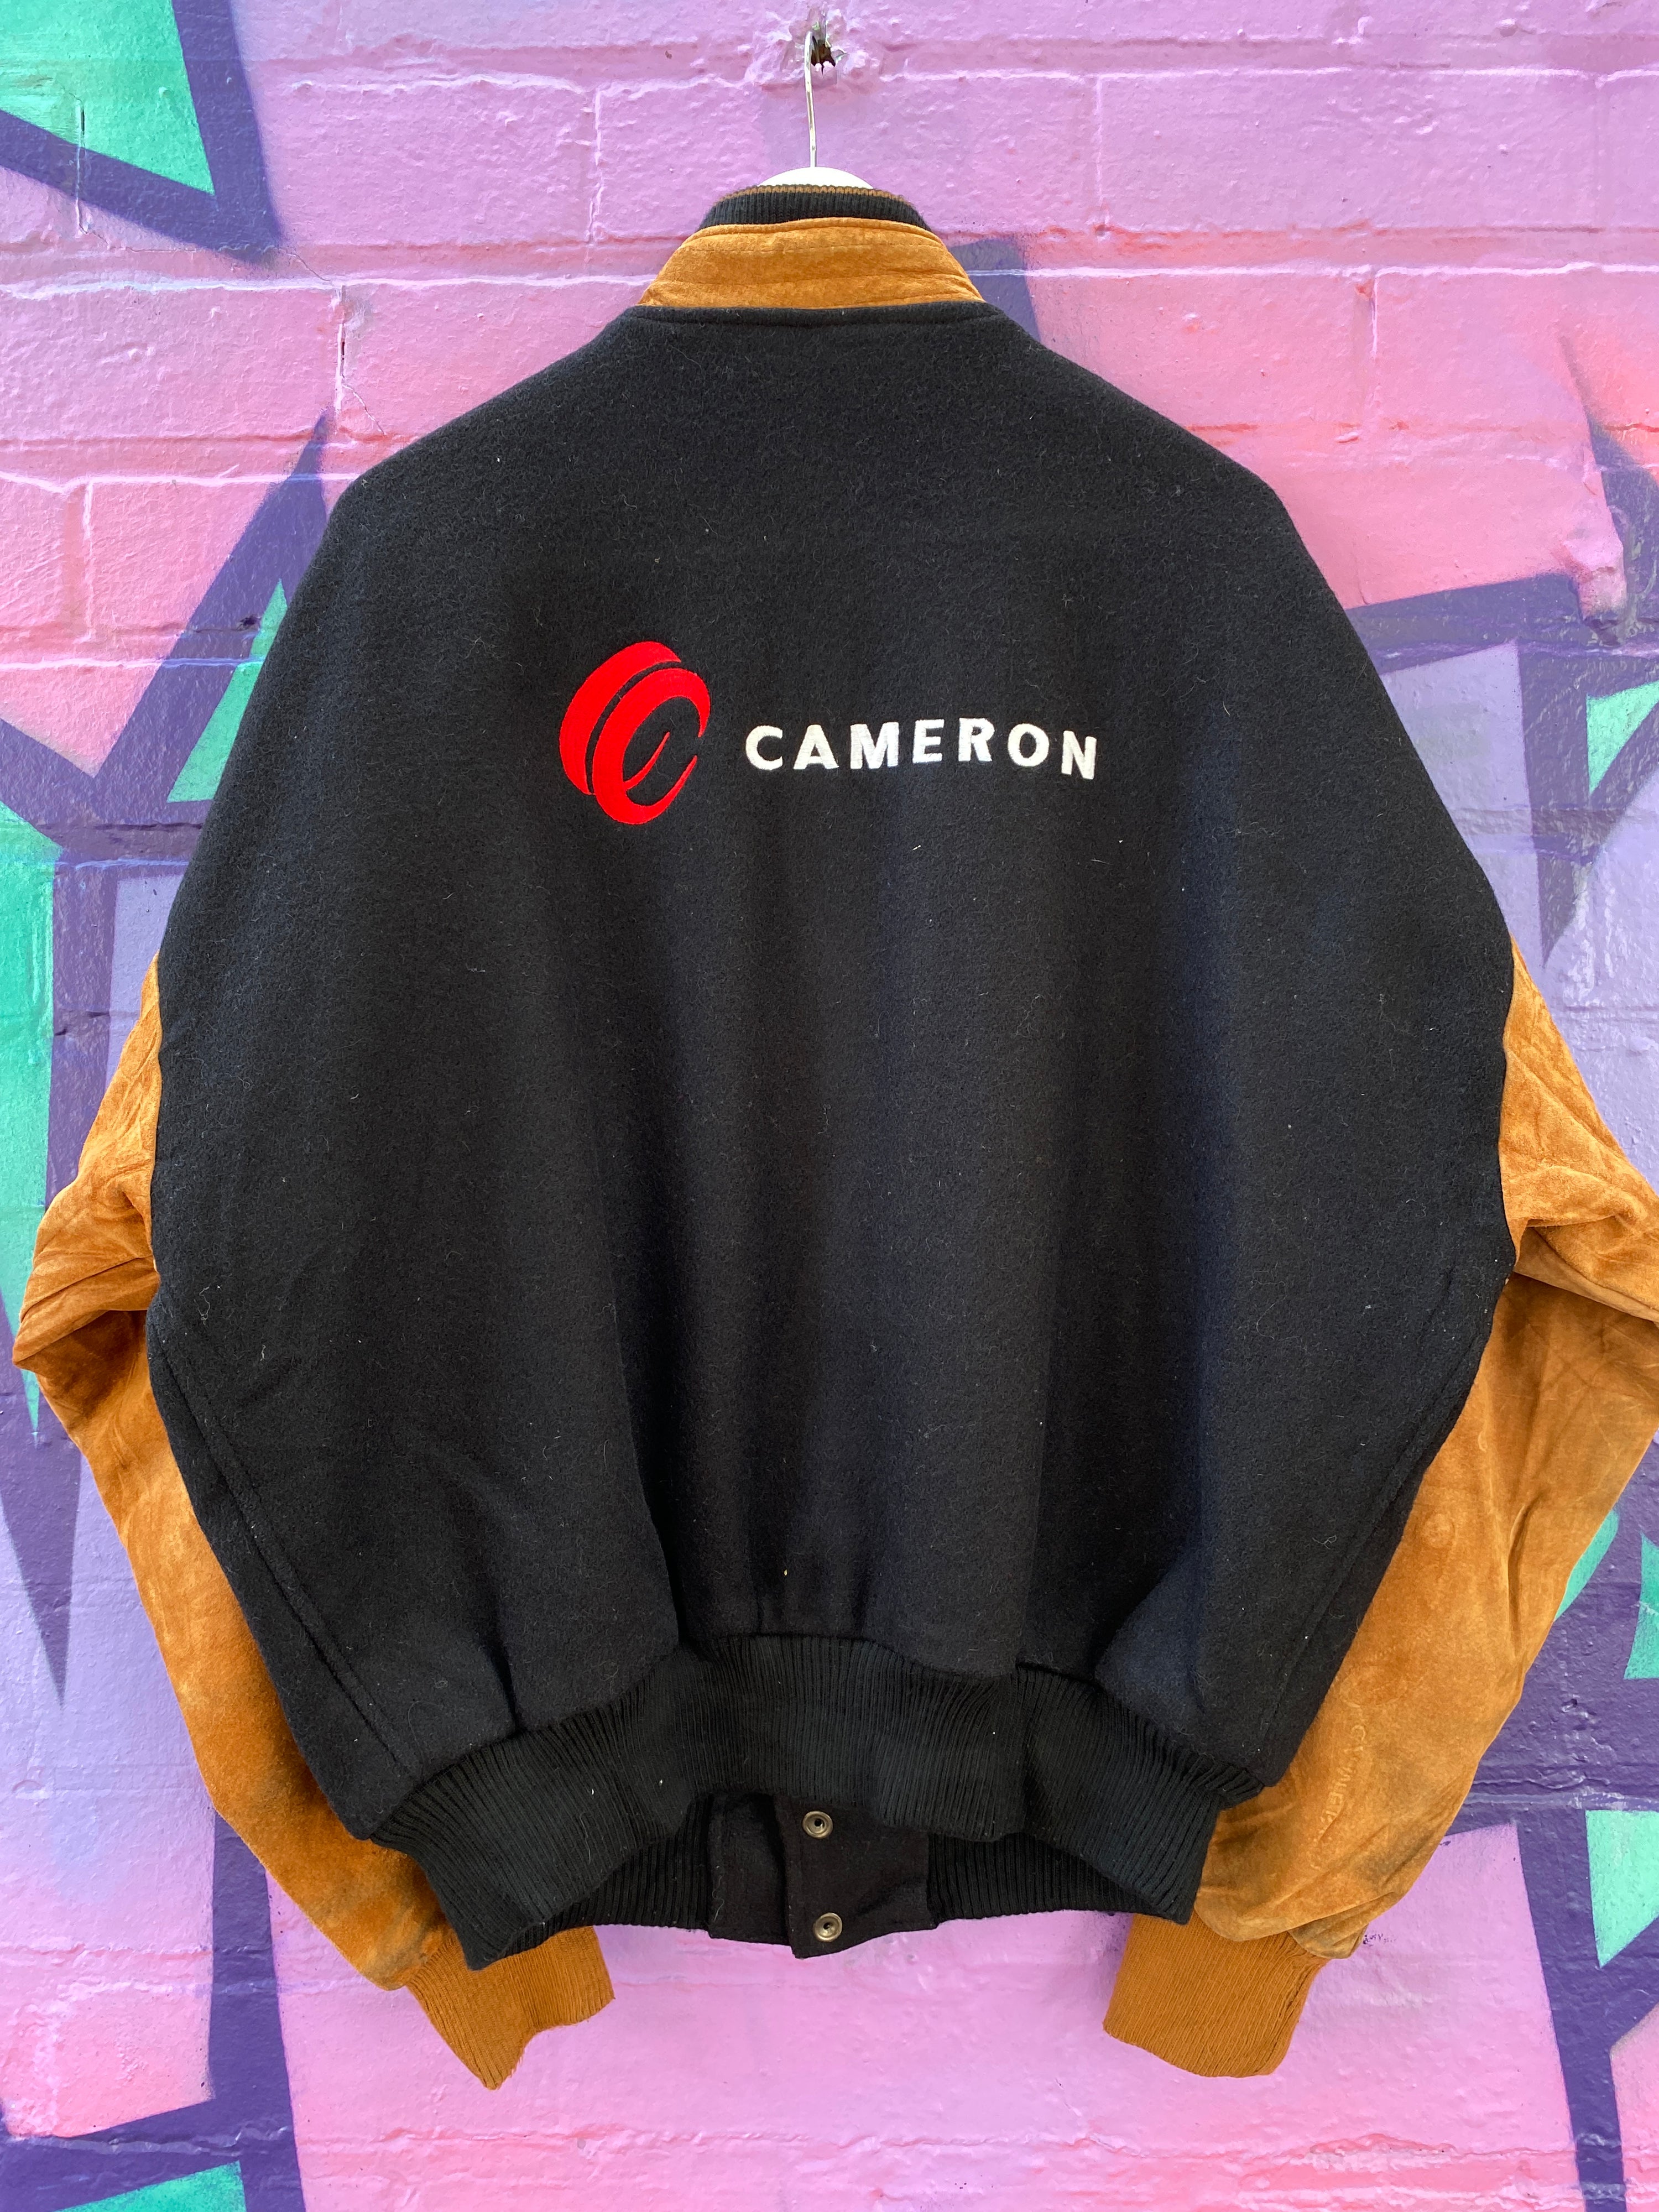 L - Vintage Varsity Jacket 'Cameron' Black/Brown